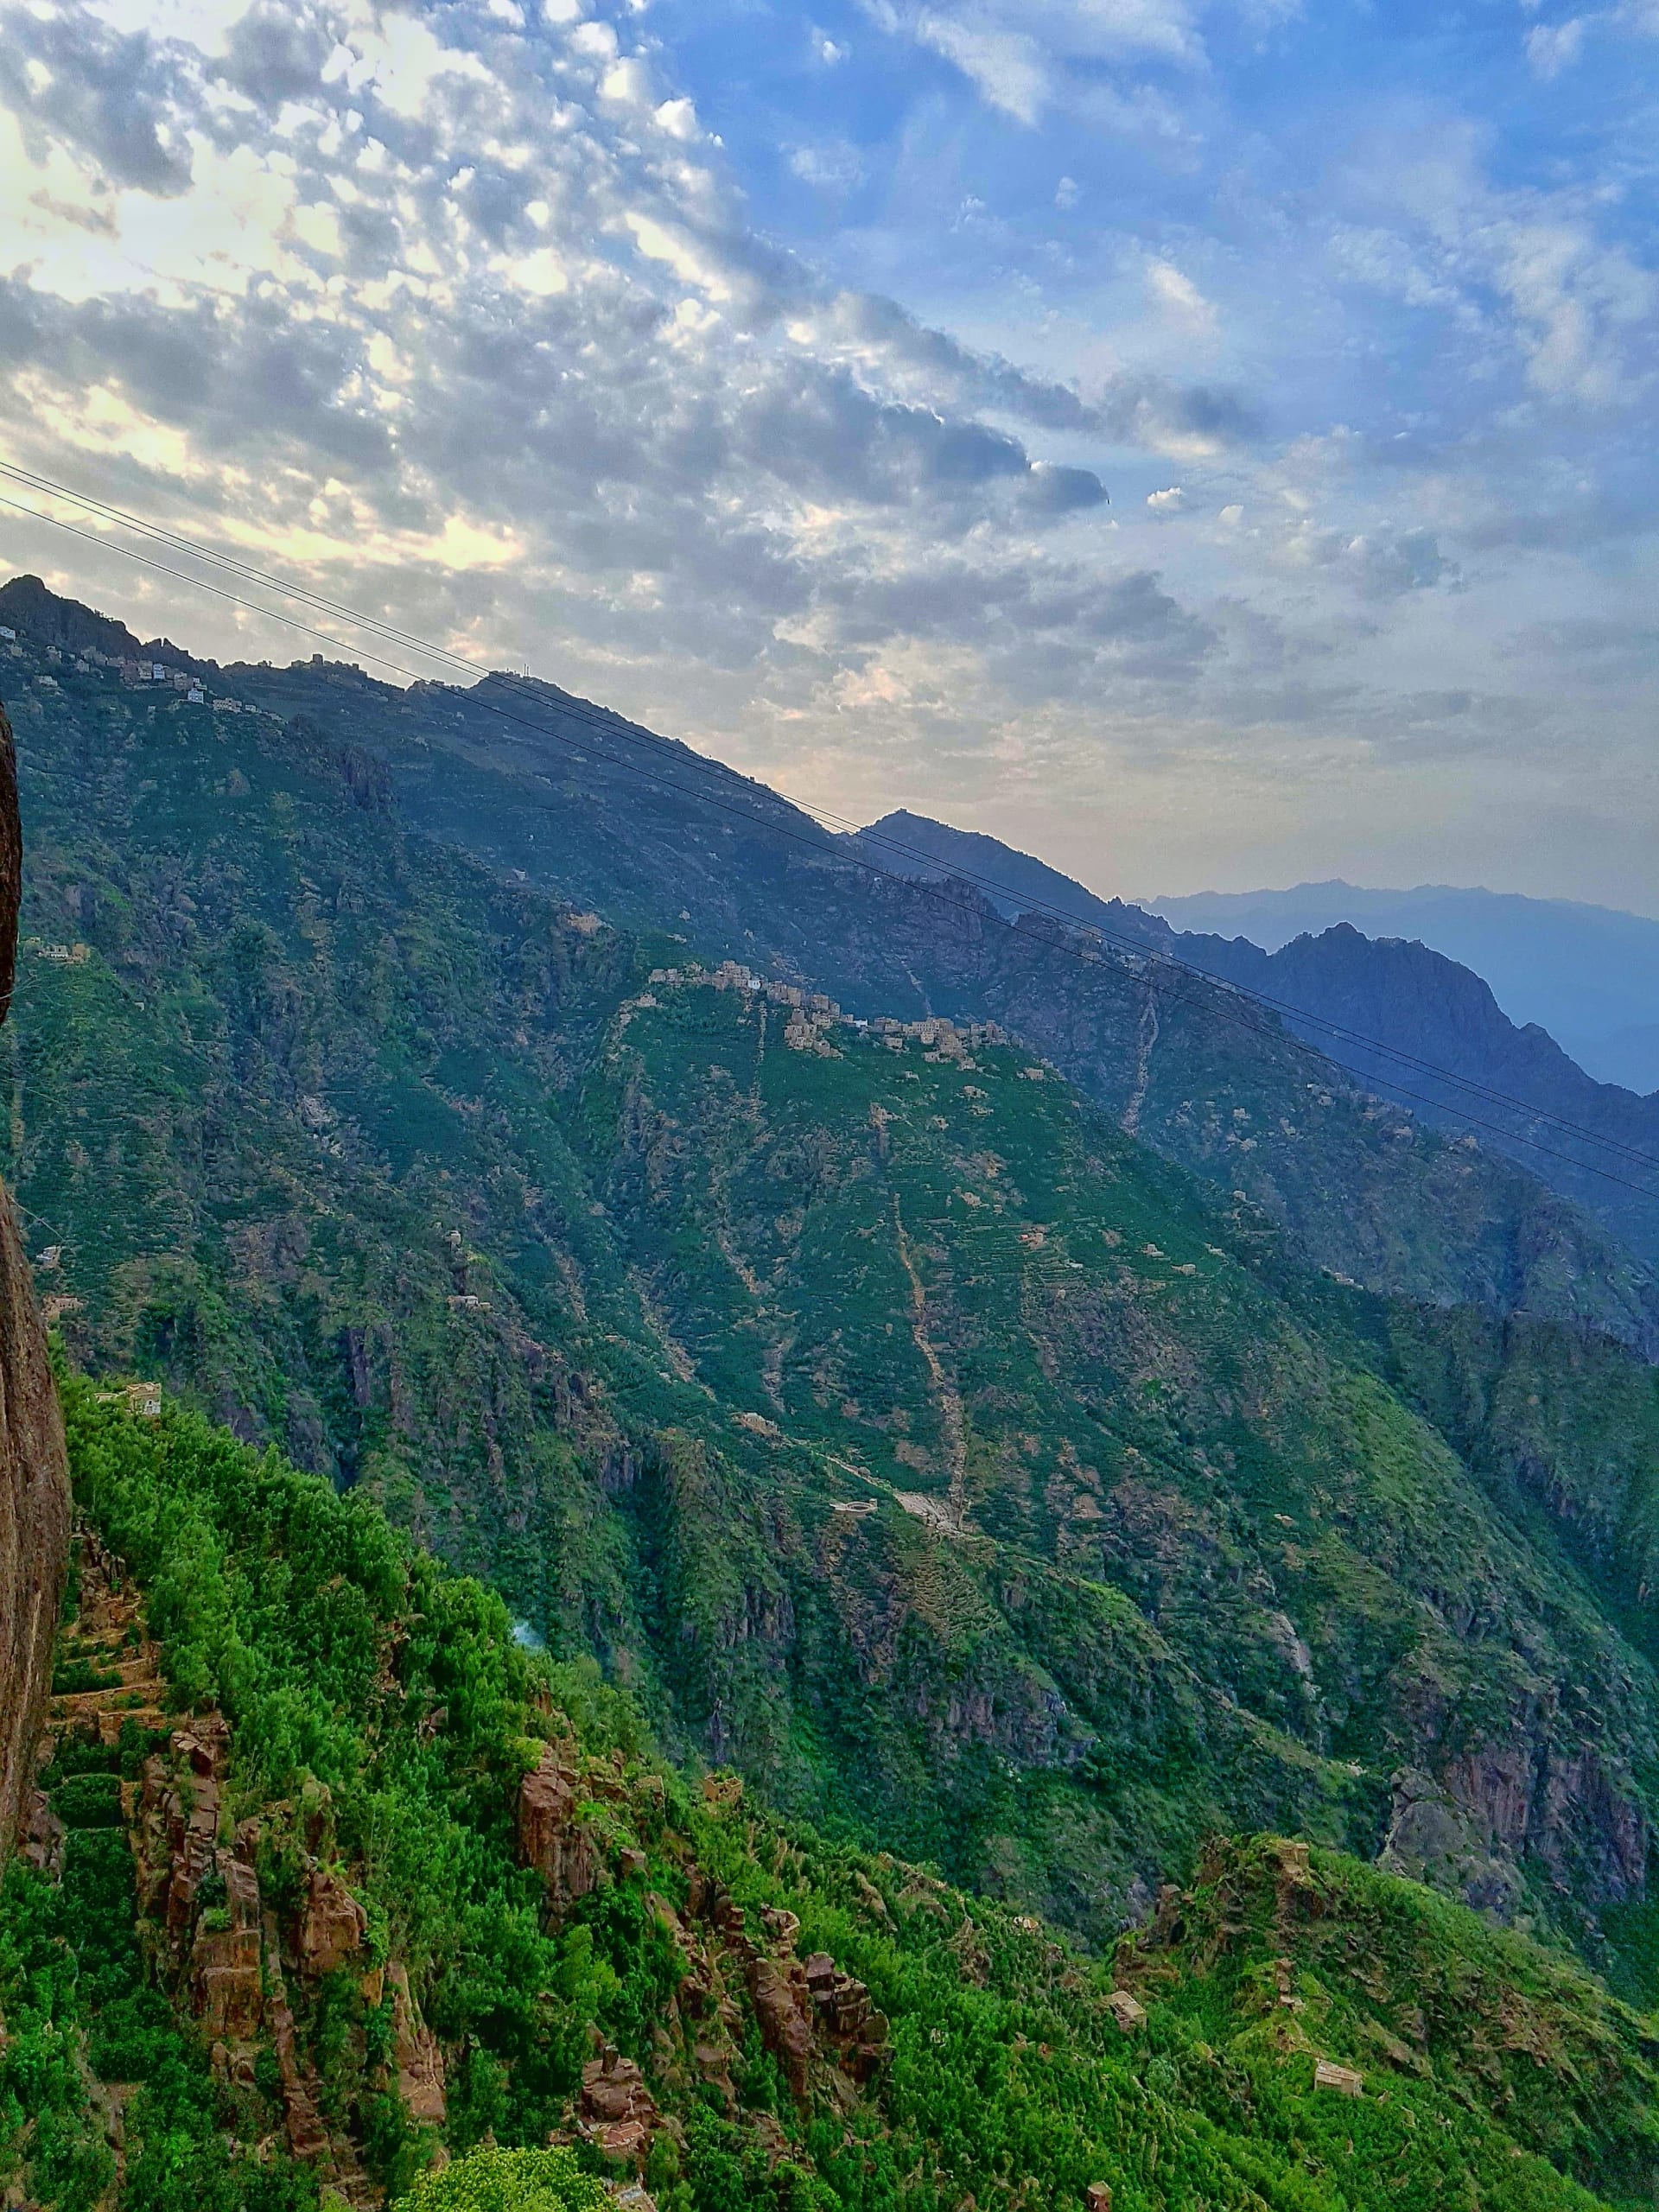 في اليمن.. استكشف آخر بقايا الغابات شبه الاستوائية الواسعة في شبه الجزيرة العربية بهذا الجبل الزاهي